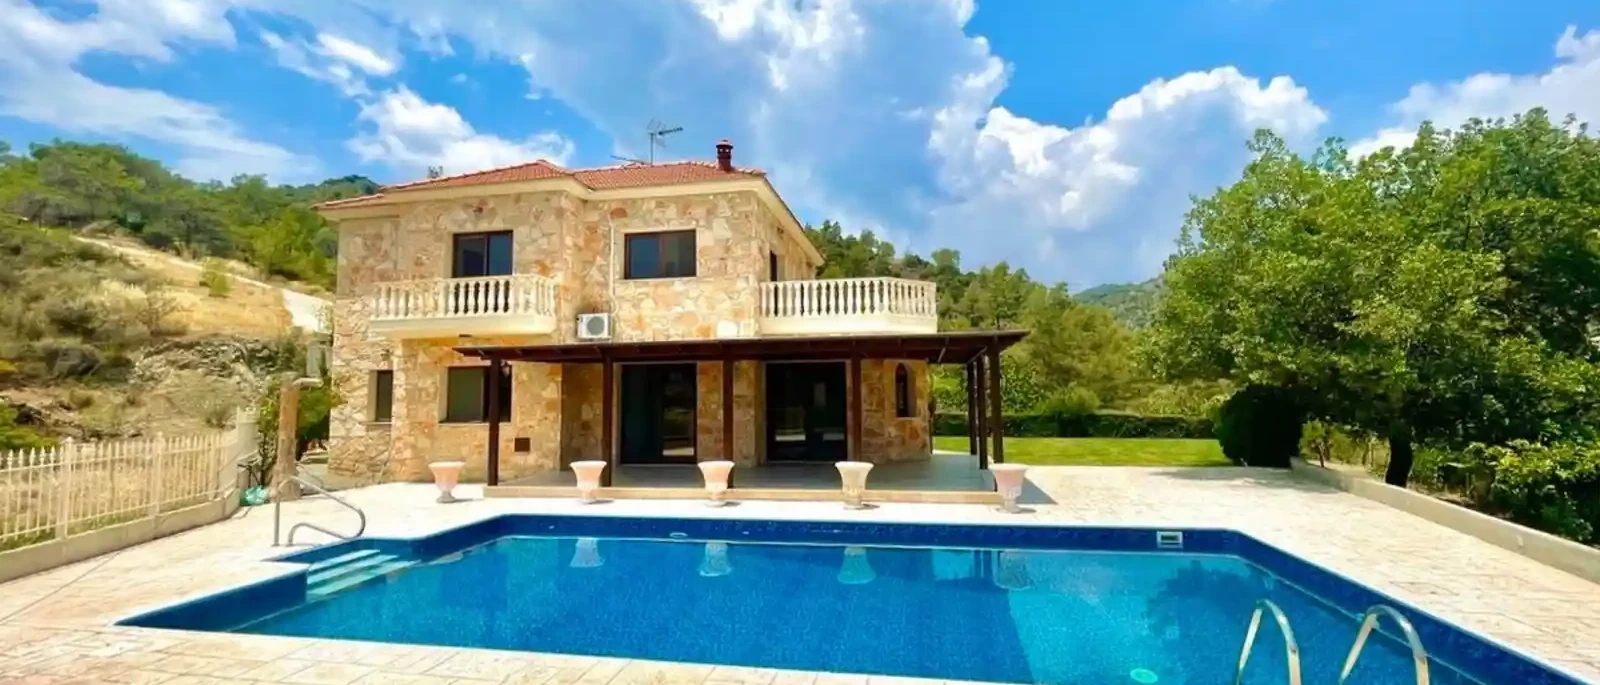 4-bedroom villa to rent €3.500, image 1